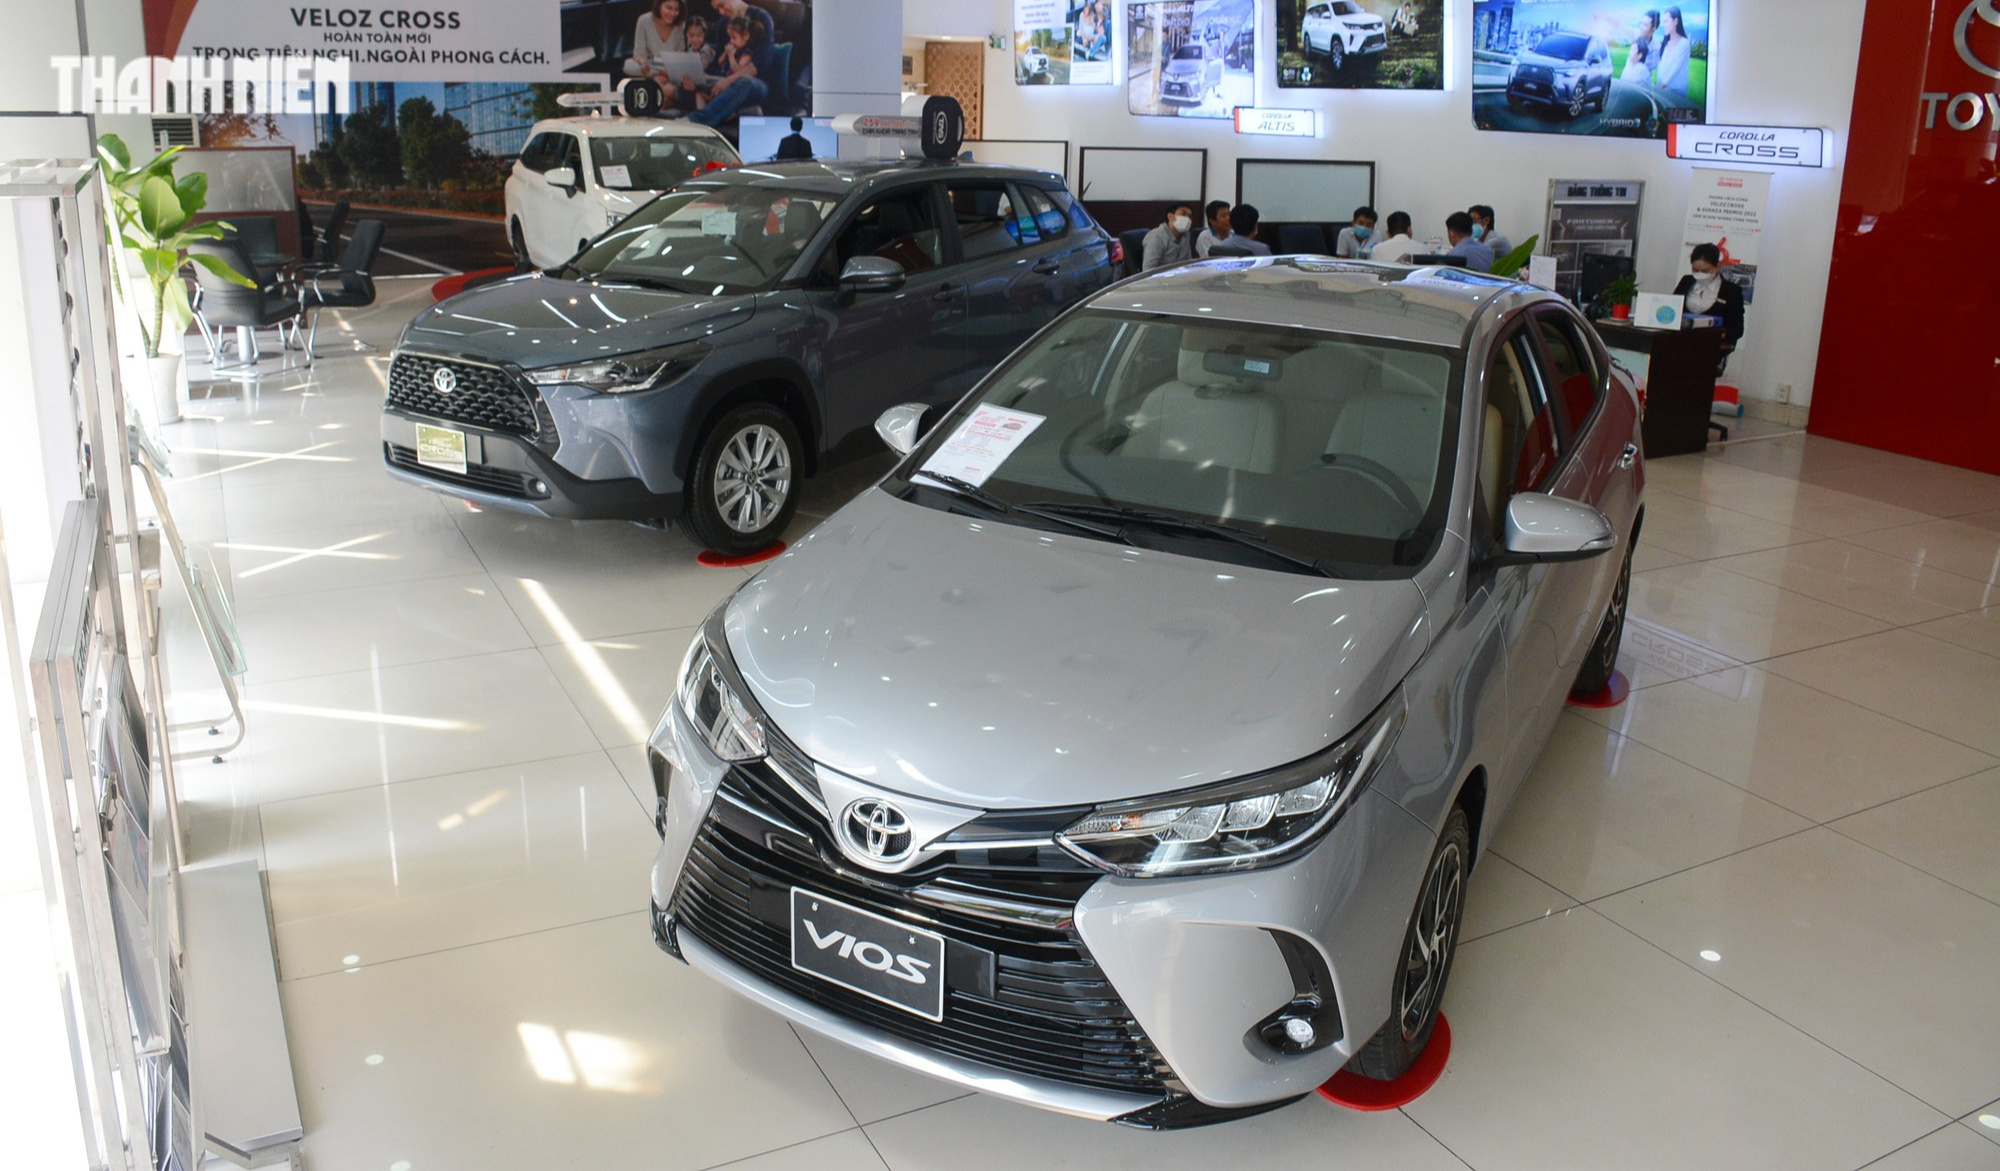 Sedan hạng B dưới 600 triệu: Hyundai Accent dẫn đầu, Toyota Vios bám sát Honda City - Ảnh 1.